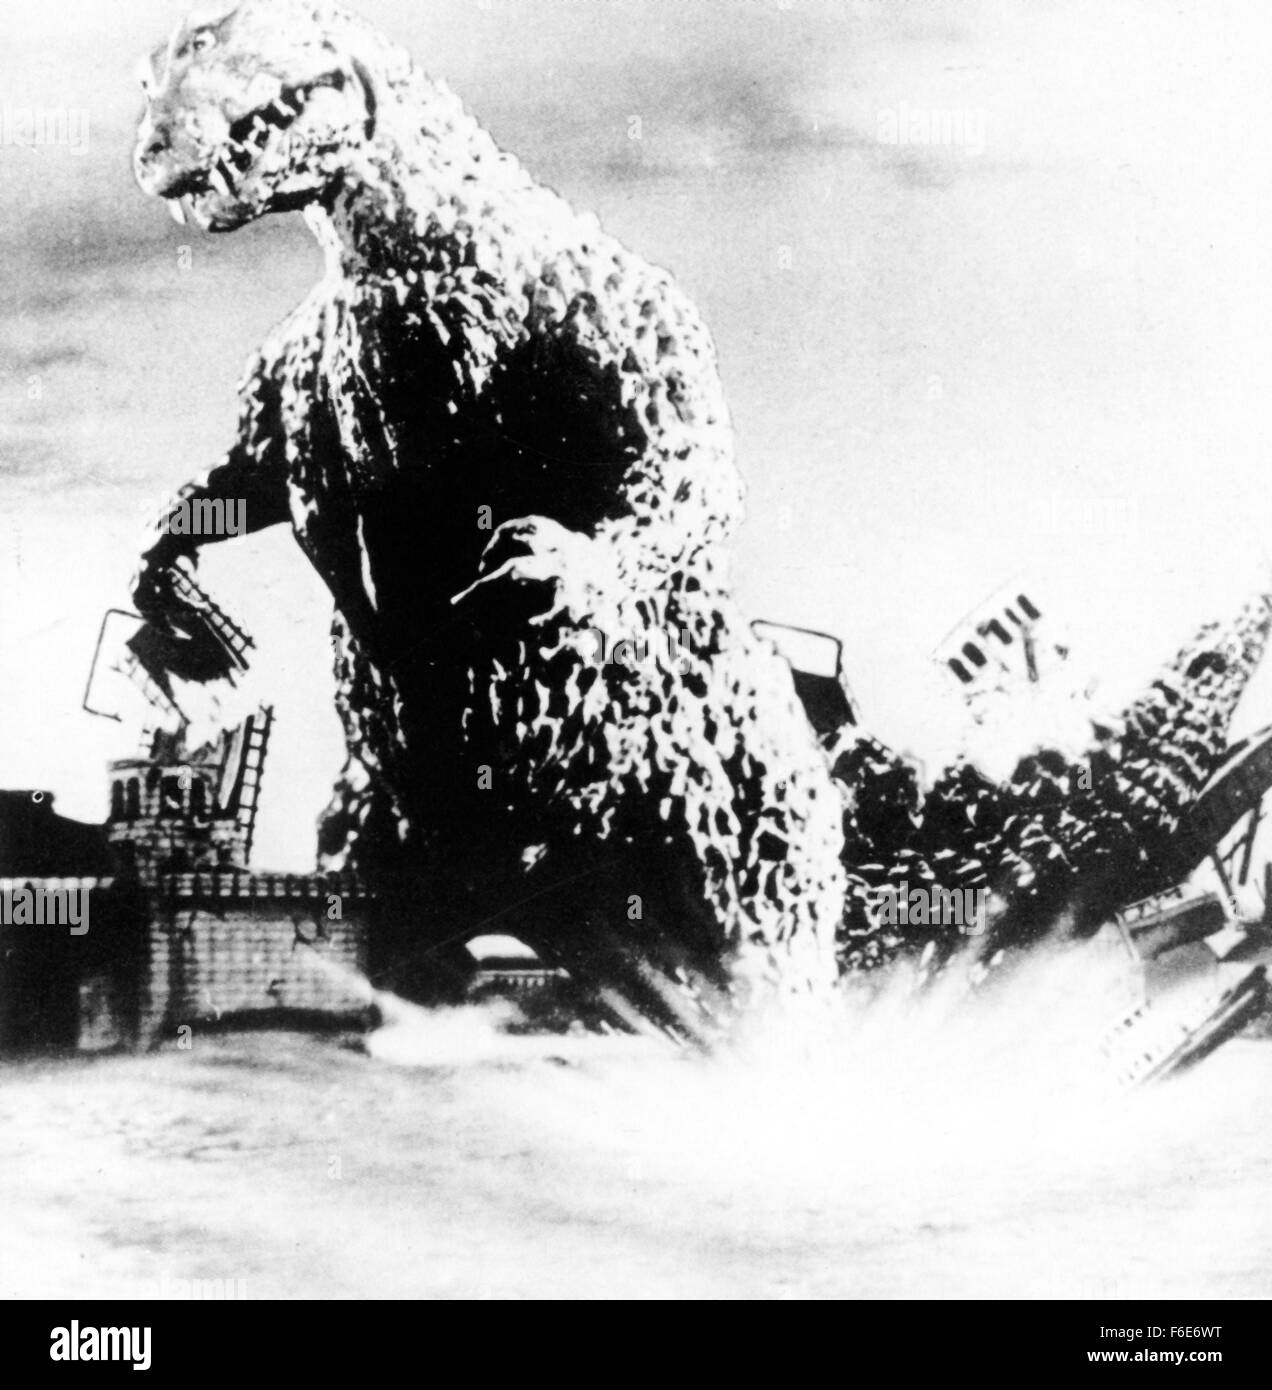 DATE DE SORTIE : Avril 27, 1956. Titre du film : Godzilla. STUDIO : Jewell Enterprises Inc. Résumé : Quand l'Américain Steve Martin journaliste enquête sur une série de catastrophes mystérieuses au large de la côte du Japon, il se retrouve face à face avec une ancienne créature si puissante et si terrifiante, il peut réduire à Tokyo un mégot de cimetière. Les essais d'armes nucléaires recréé ce vestige de l'ère jurassique, et maintenant, c'est saccager tout le Japon. La nuit, Godzilla filtre la Tokyo semant la mort et la destruction dans son sillage, disparaissant dans la baie de Tokyo quand sa colère s'apaise. Les armes conventionnelles sont inutiles contre Banque D'Images